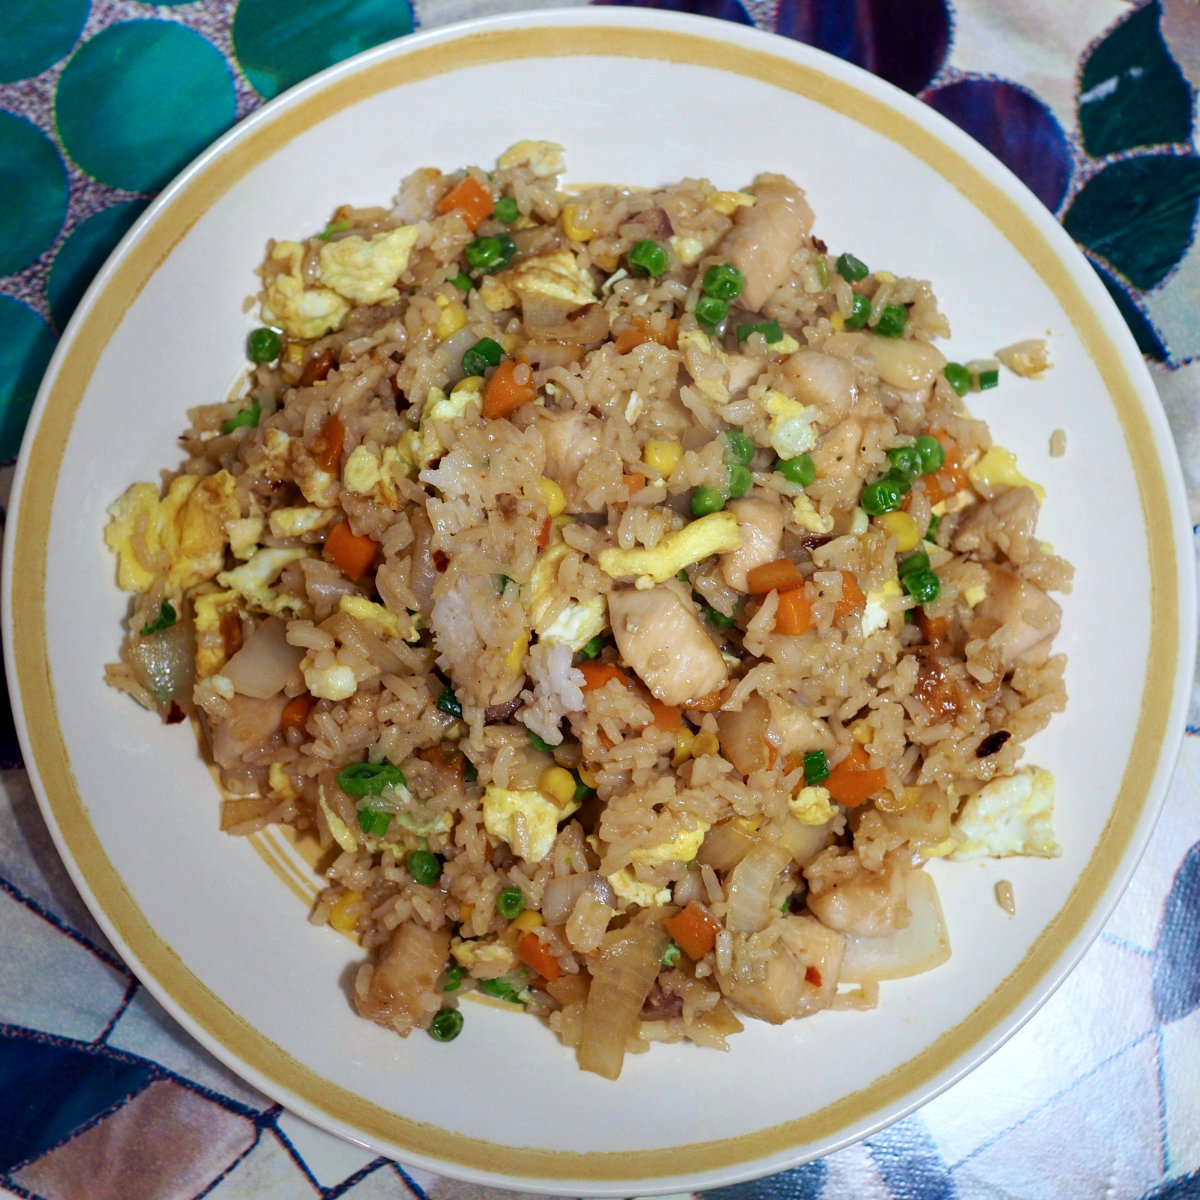 Stir-fried rice